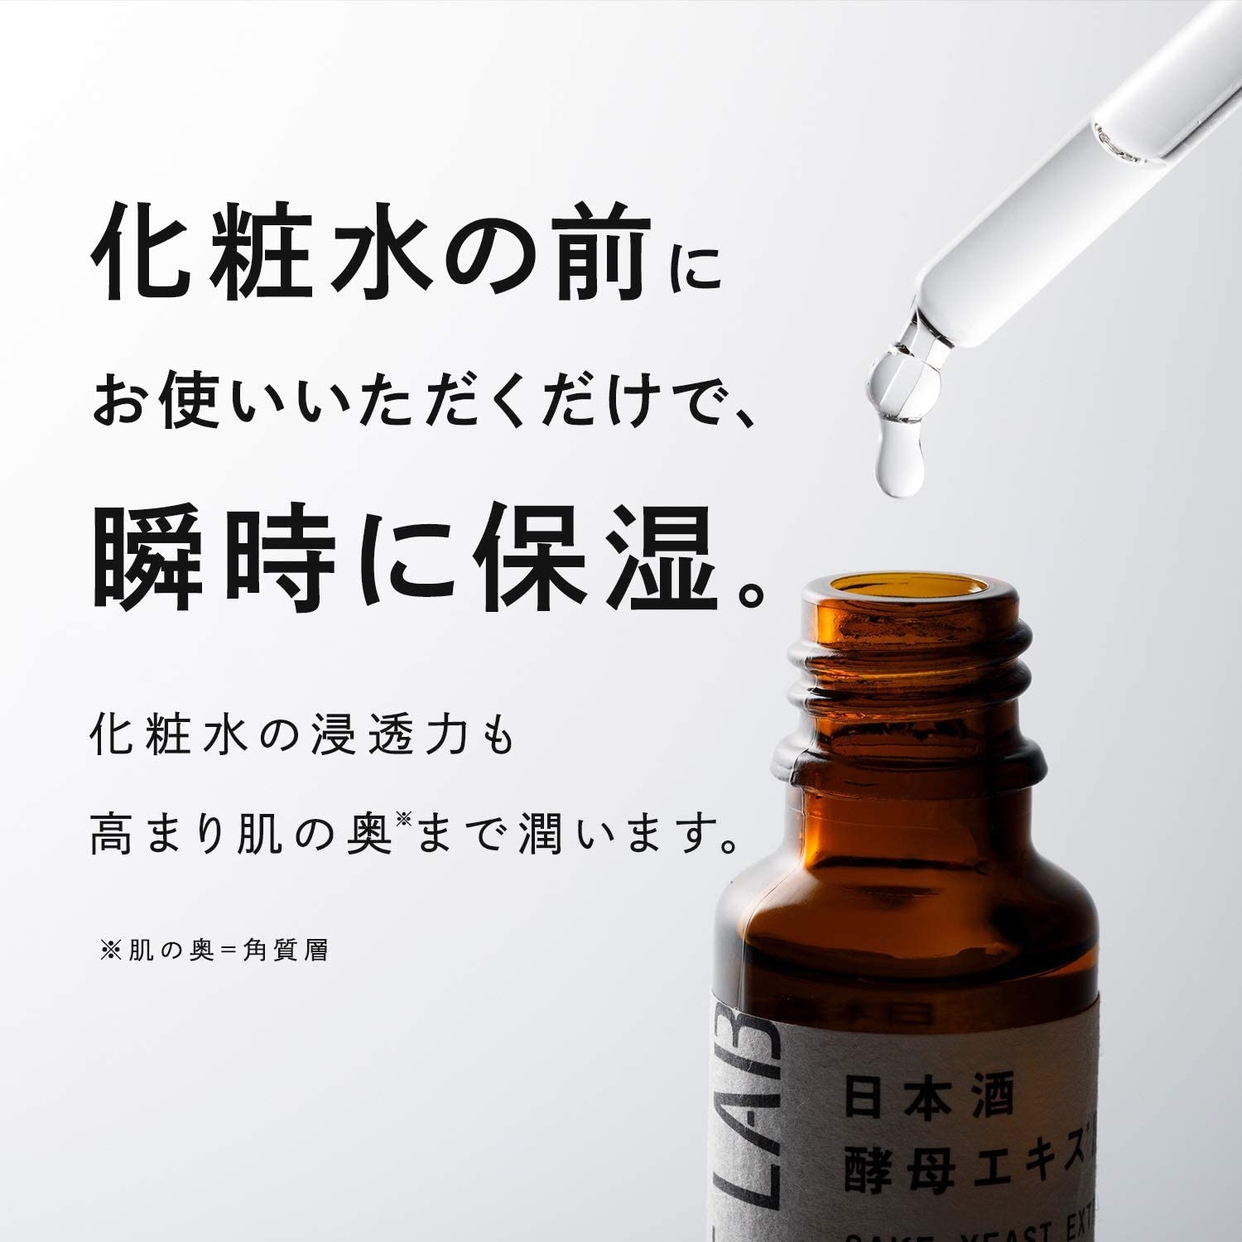 コメラボ 日本酒酵母エキスの商品画像3 